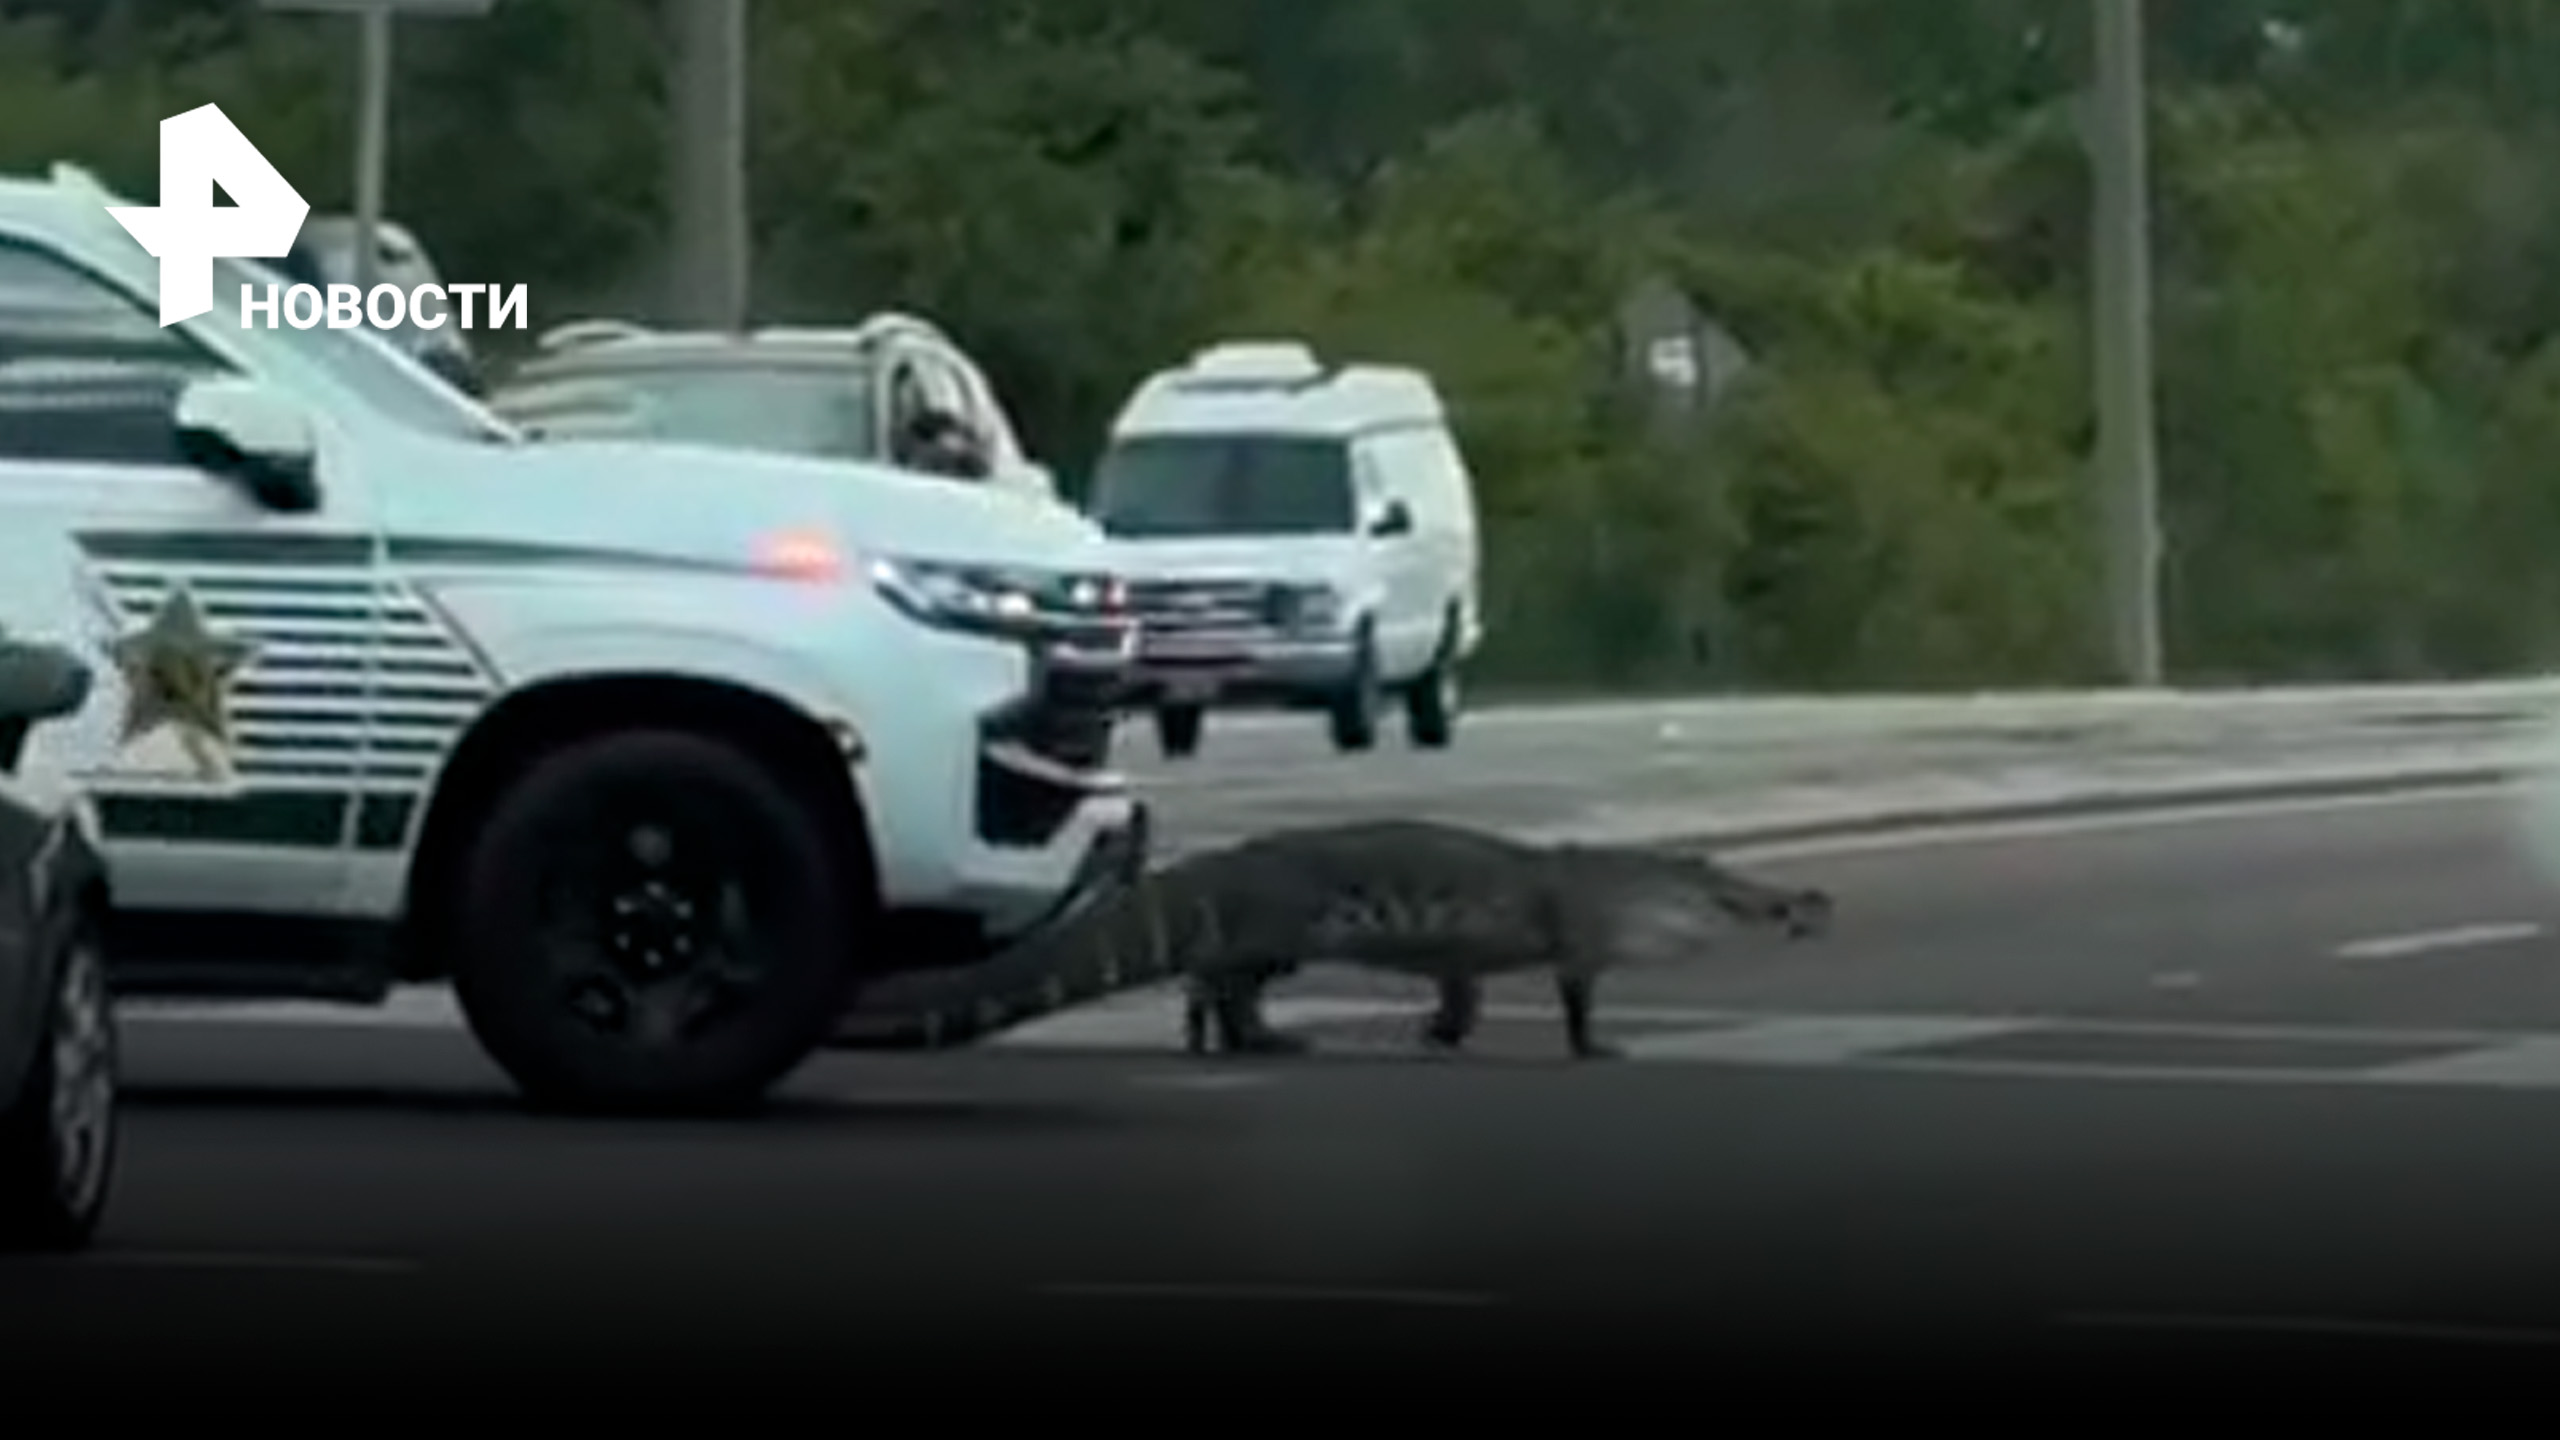 Крокодил неторопливо переходит проезжую часть в сопровождении машины шерифа